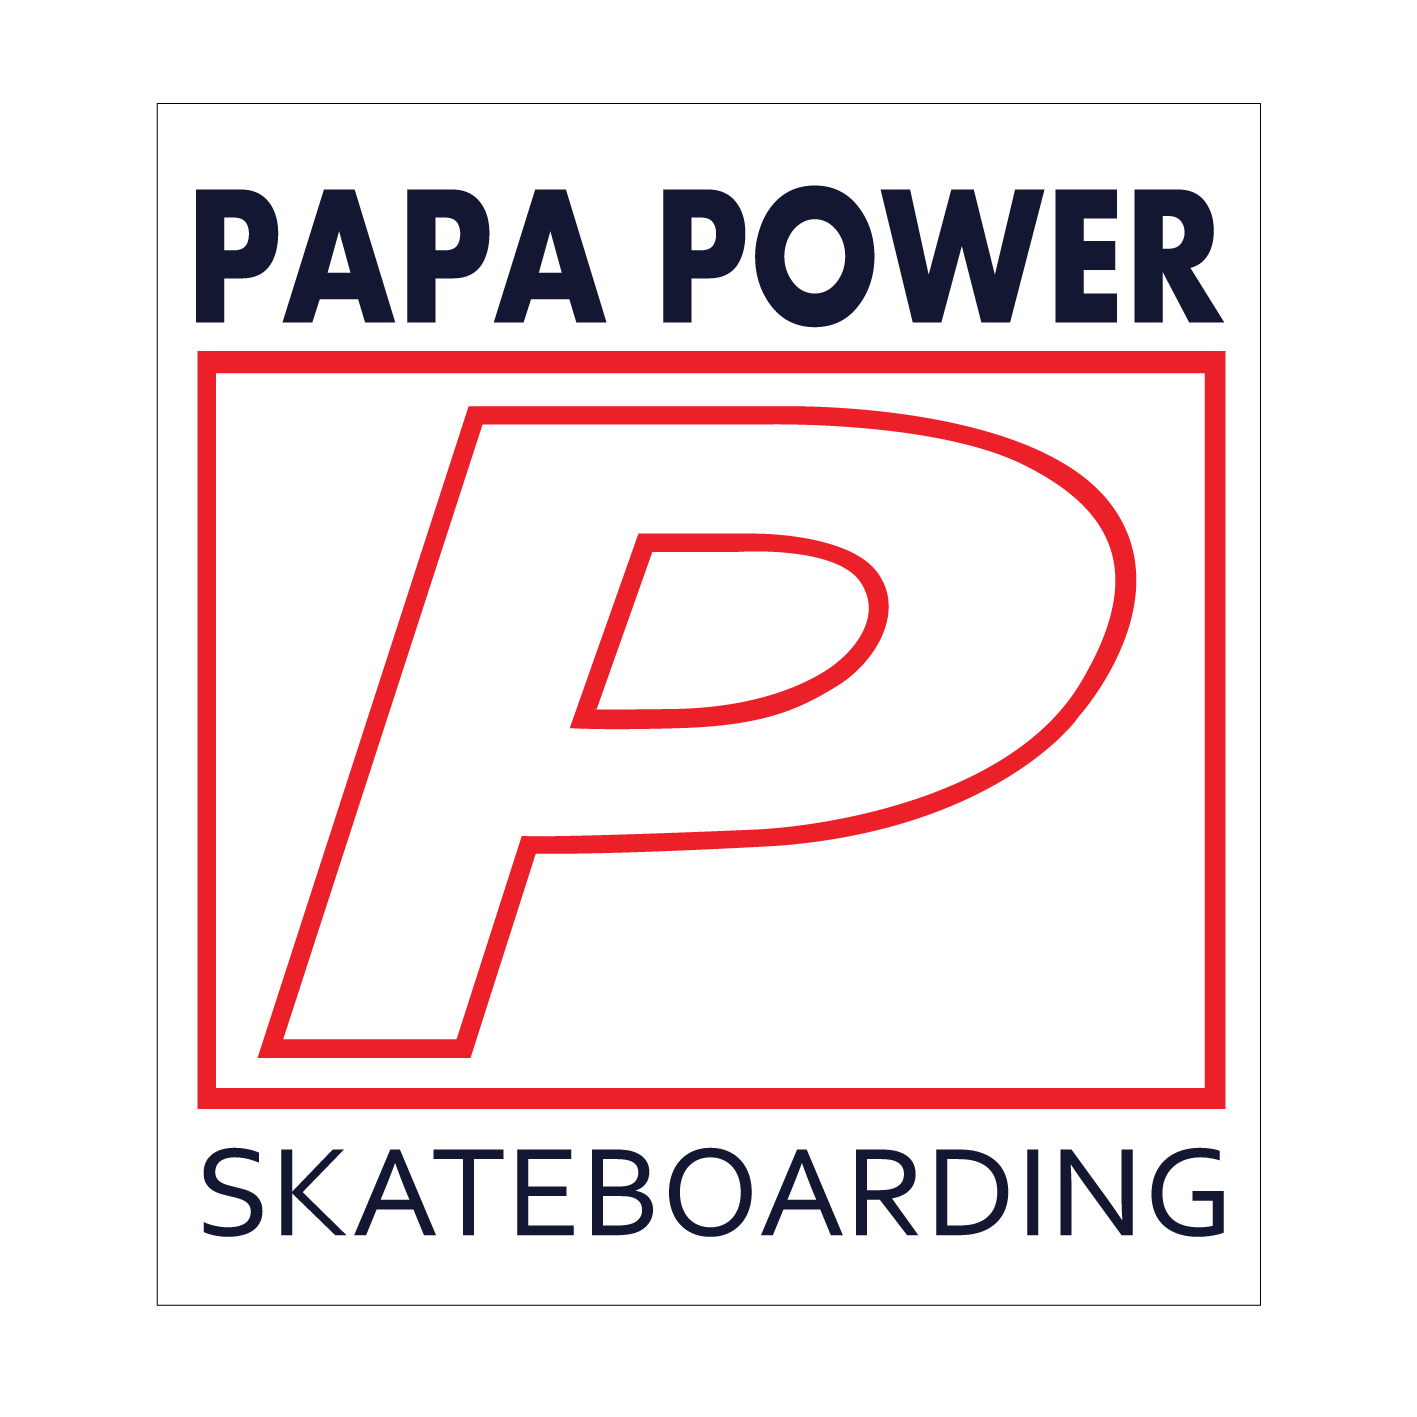 Papa Power